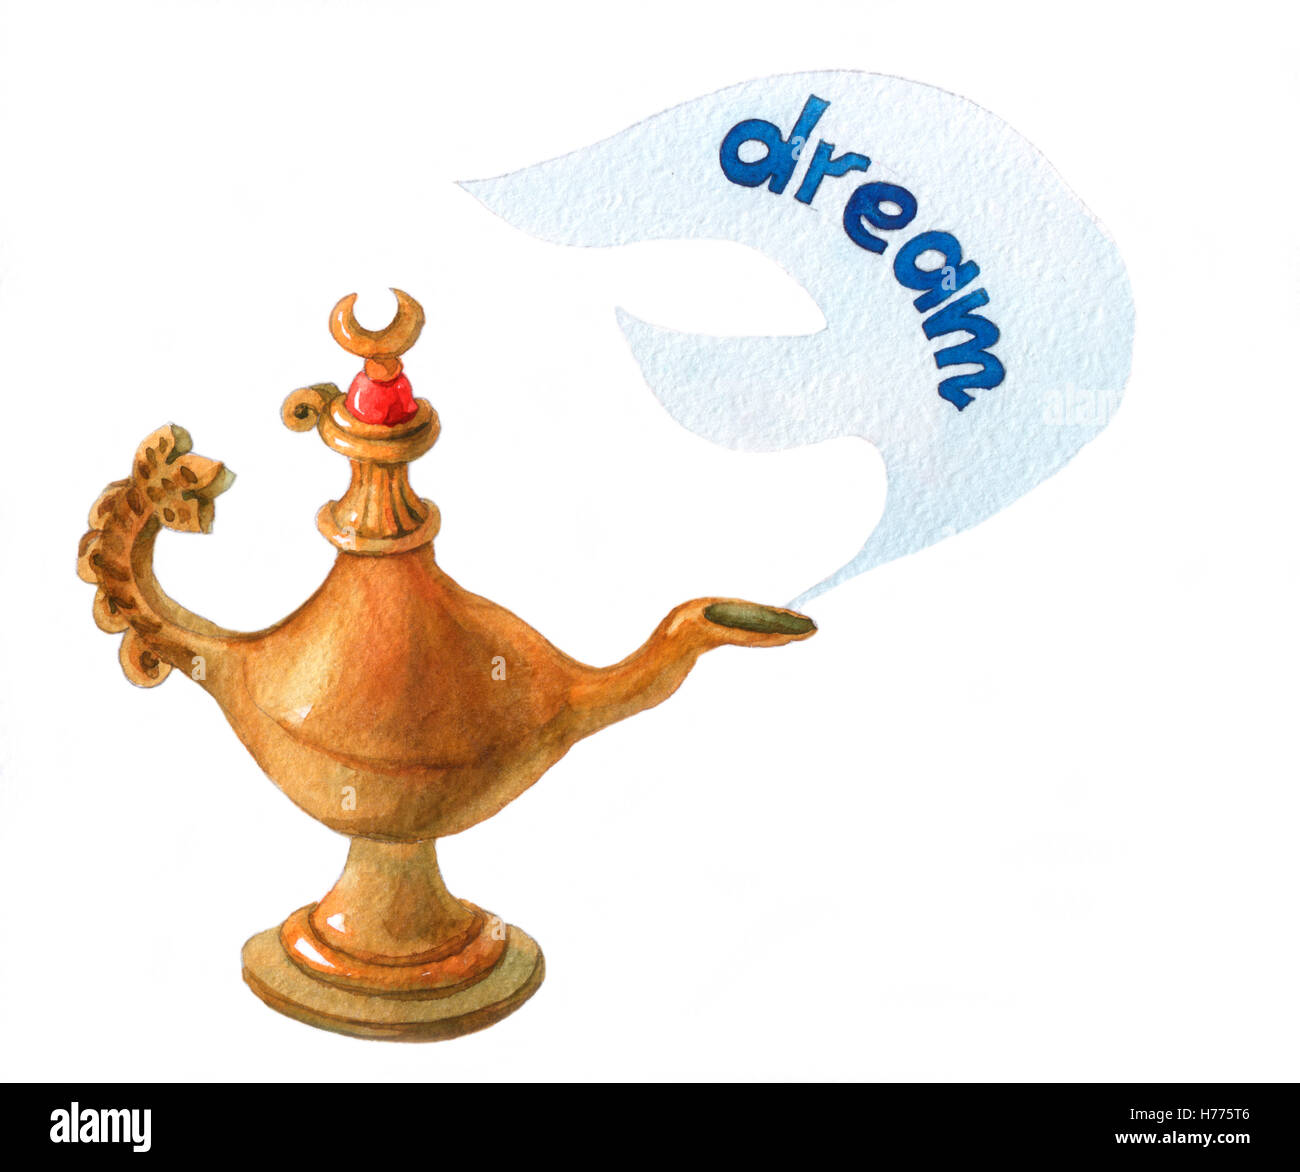 Hand Aquarell Darstellung der magischen Aladdin Genie Lampe auf weißem  Hintergrund Stockfotografie - Alamy